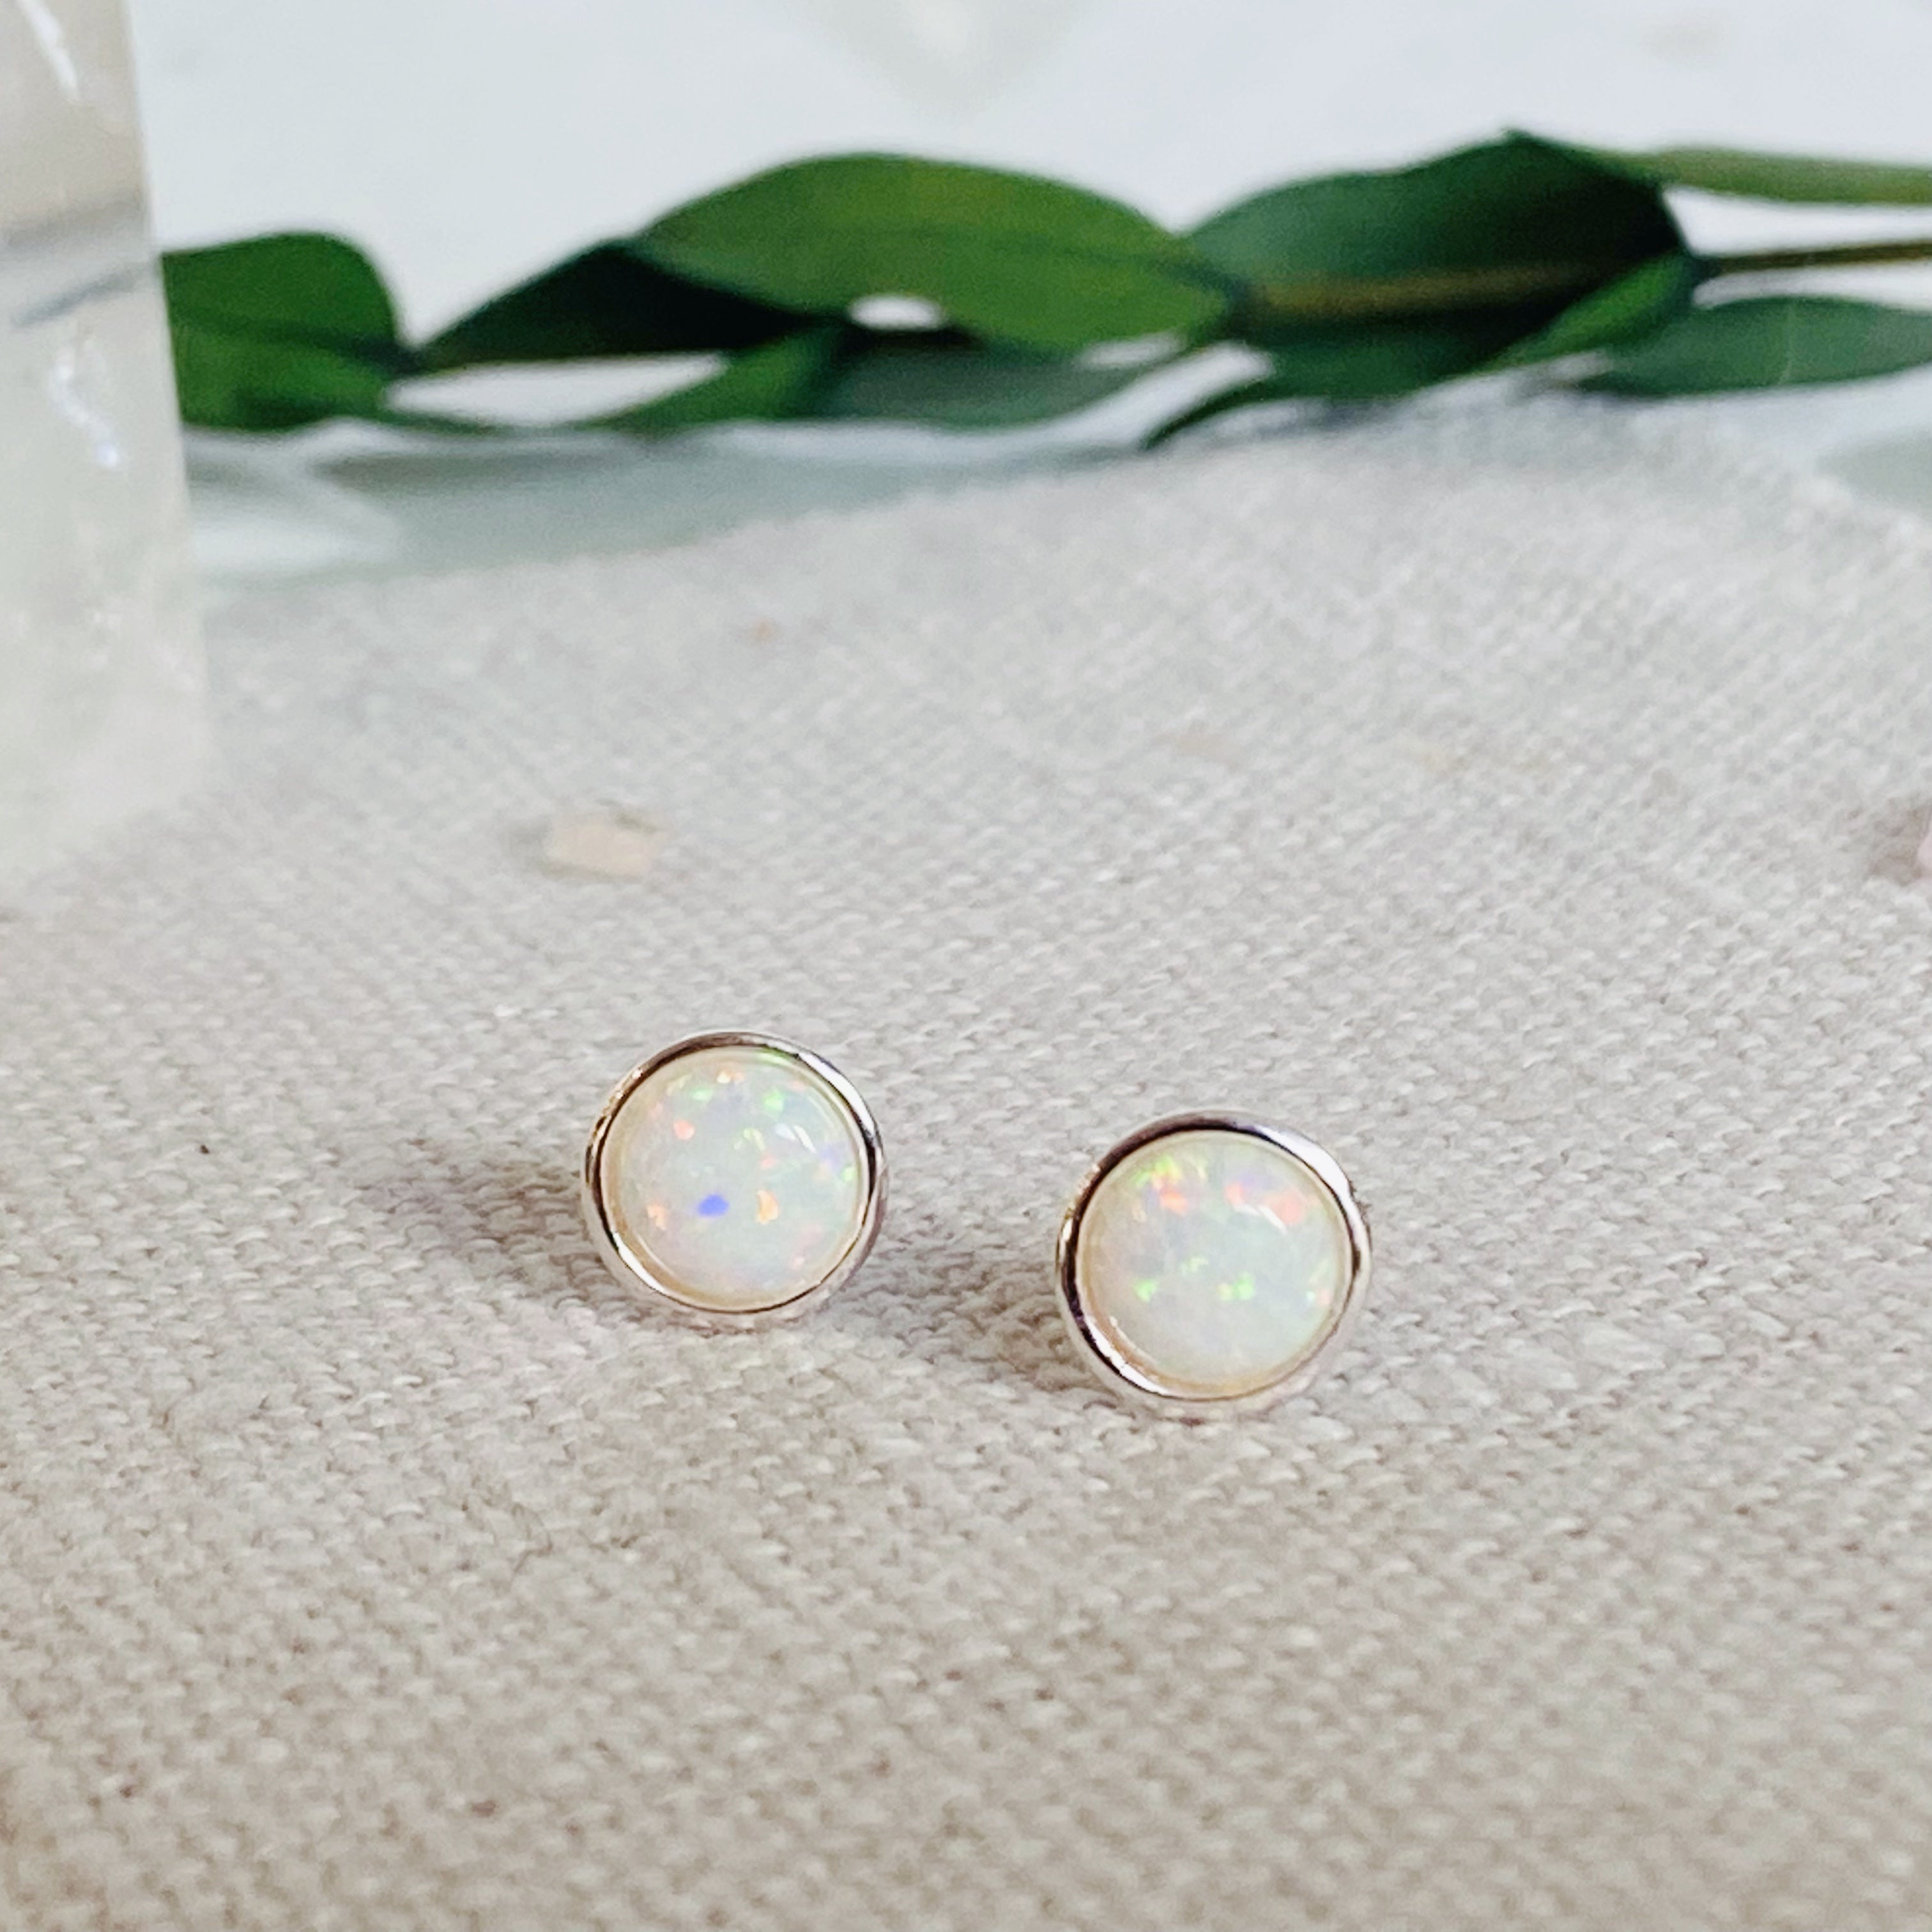 Buy 14K Gold Opal Studs Blue Opal Earrings Gold Stud Earrings Online in  India  Etsy